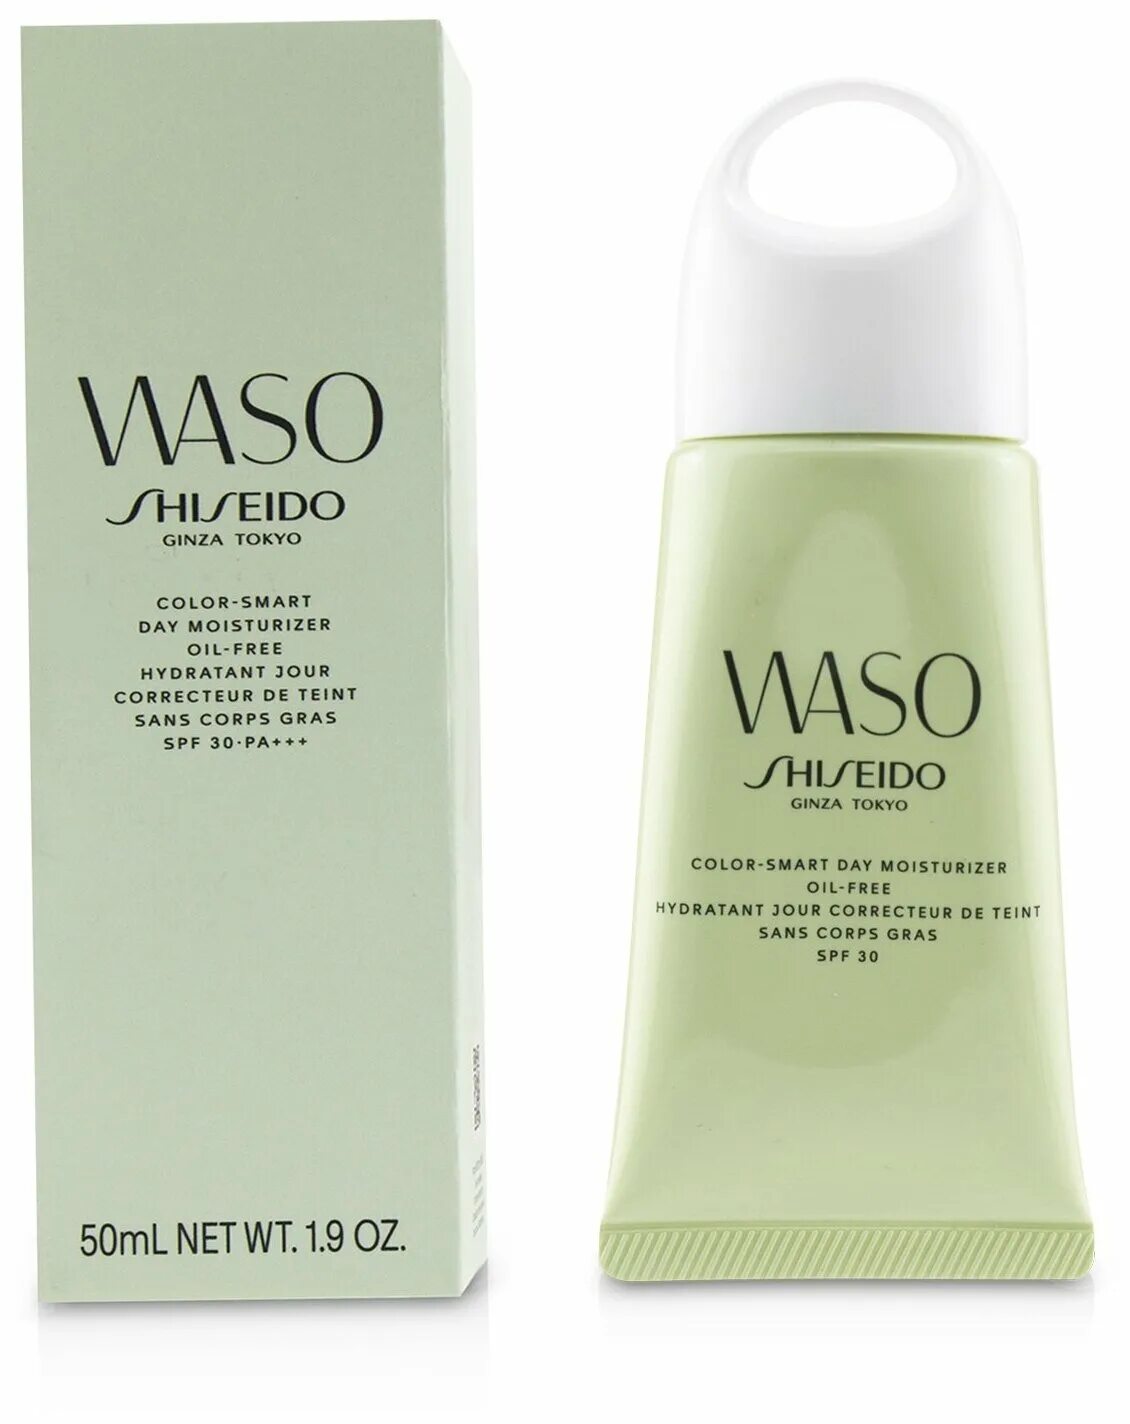 Shiseido 30. Waso Shiseido Color Smart Day Moisturizer. Shiseido Waso Color-Smart Day Moisturizer SPF 30. Shiseido Waso Smart Cream.